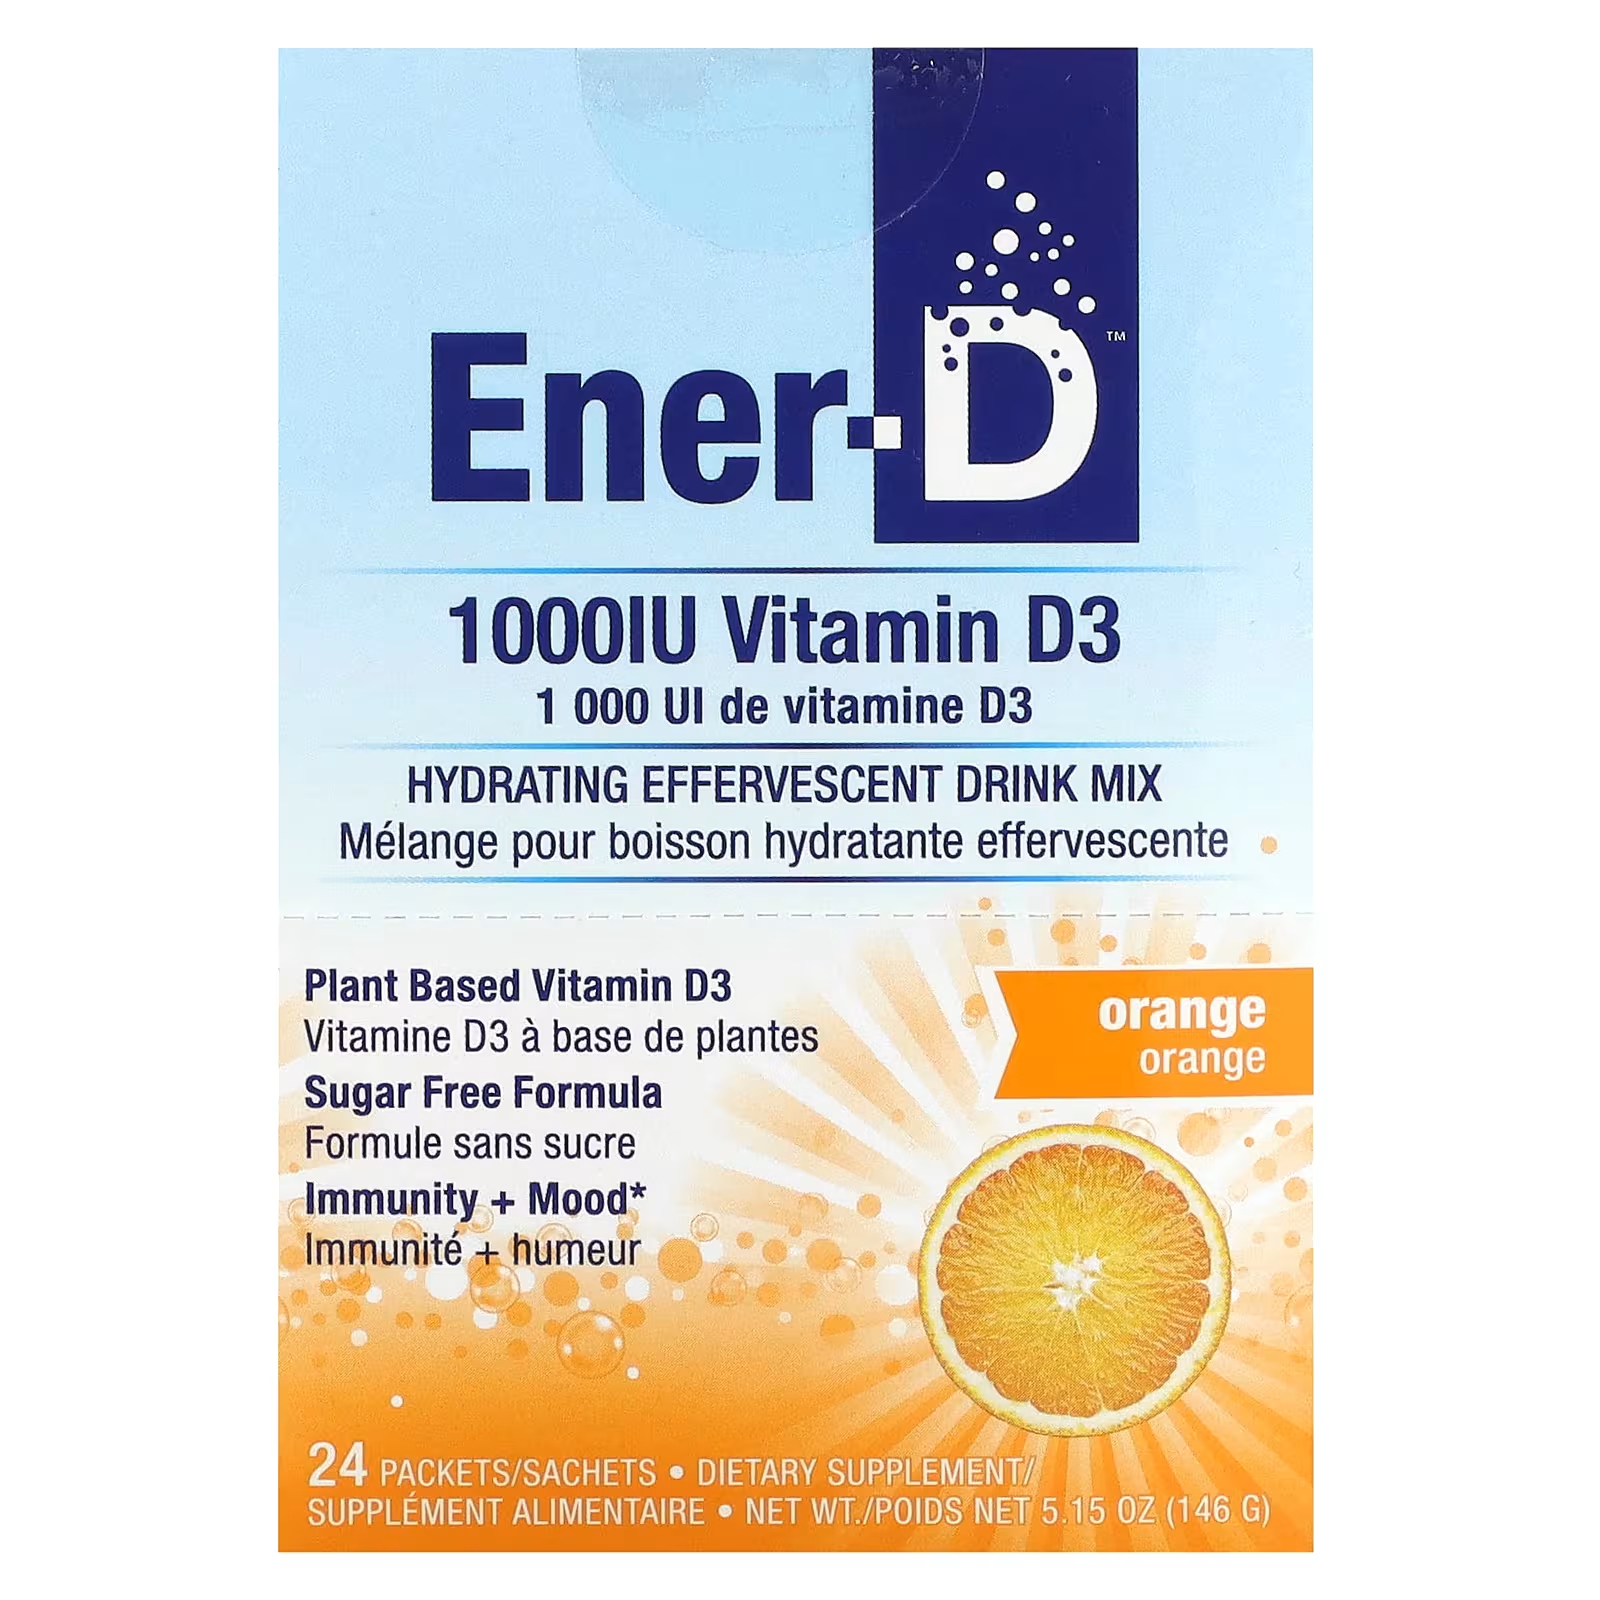 пищевая добавка питьевая с витамином d3 sesderma defense 500 мл Шипучий напиток Витамин D3 Ener-C Ener-D 1000 мг апельсин, 24 пакета